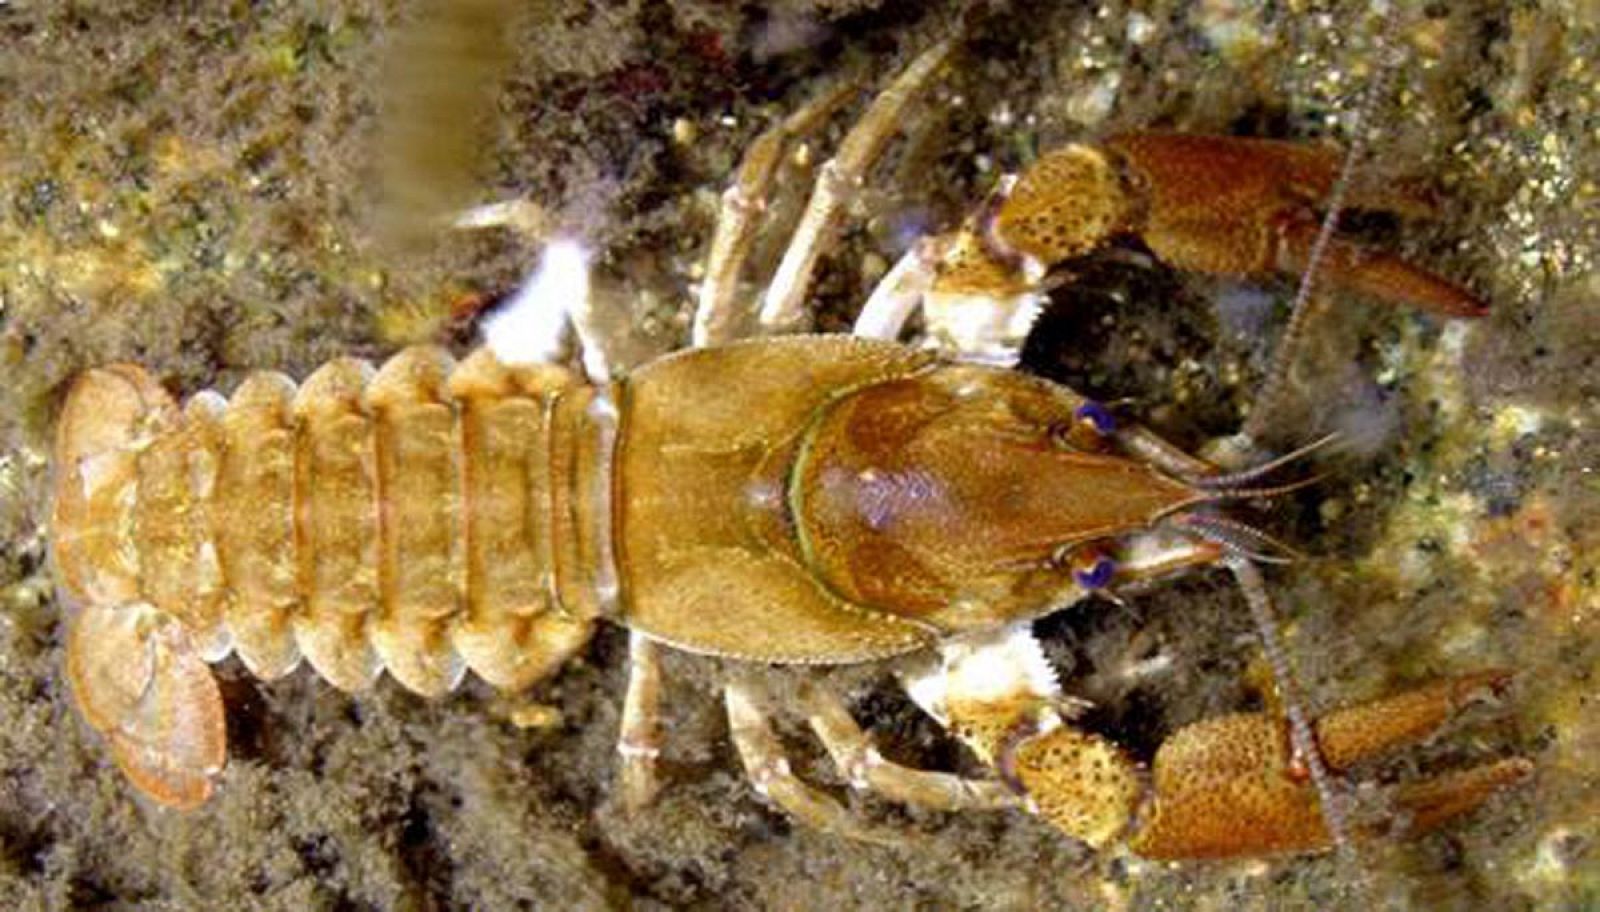 Ejemplar de cangrejo de río (Austropotamobius italicus), conocido como 'cangrejo autóctono'.